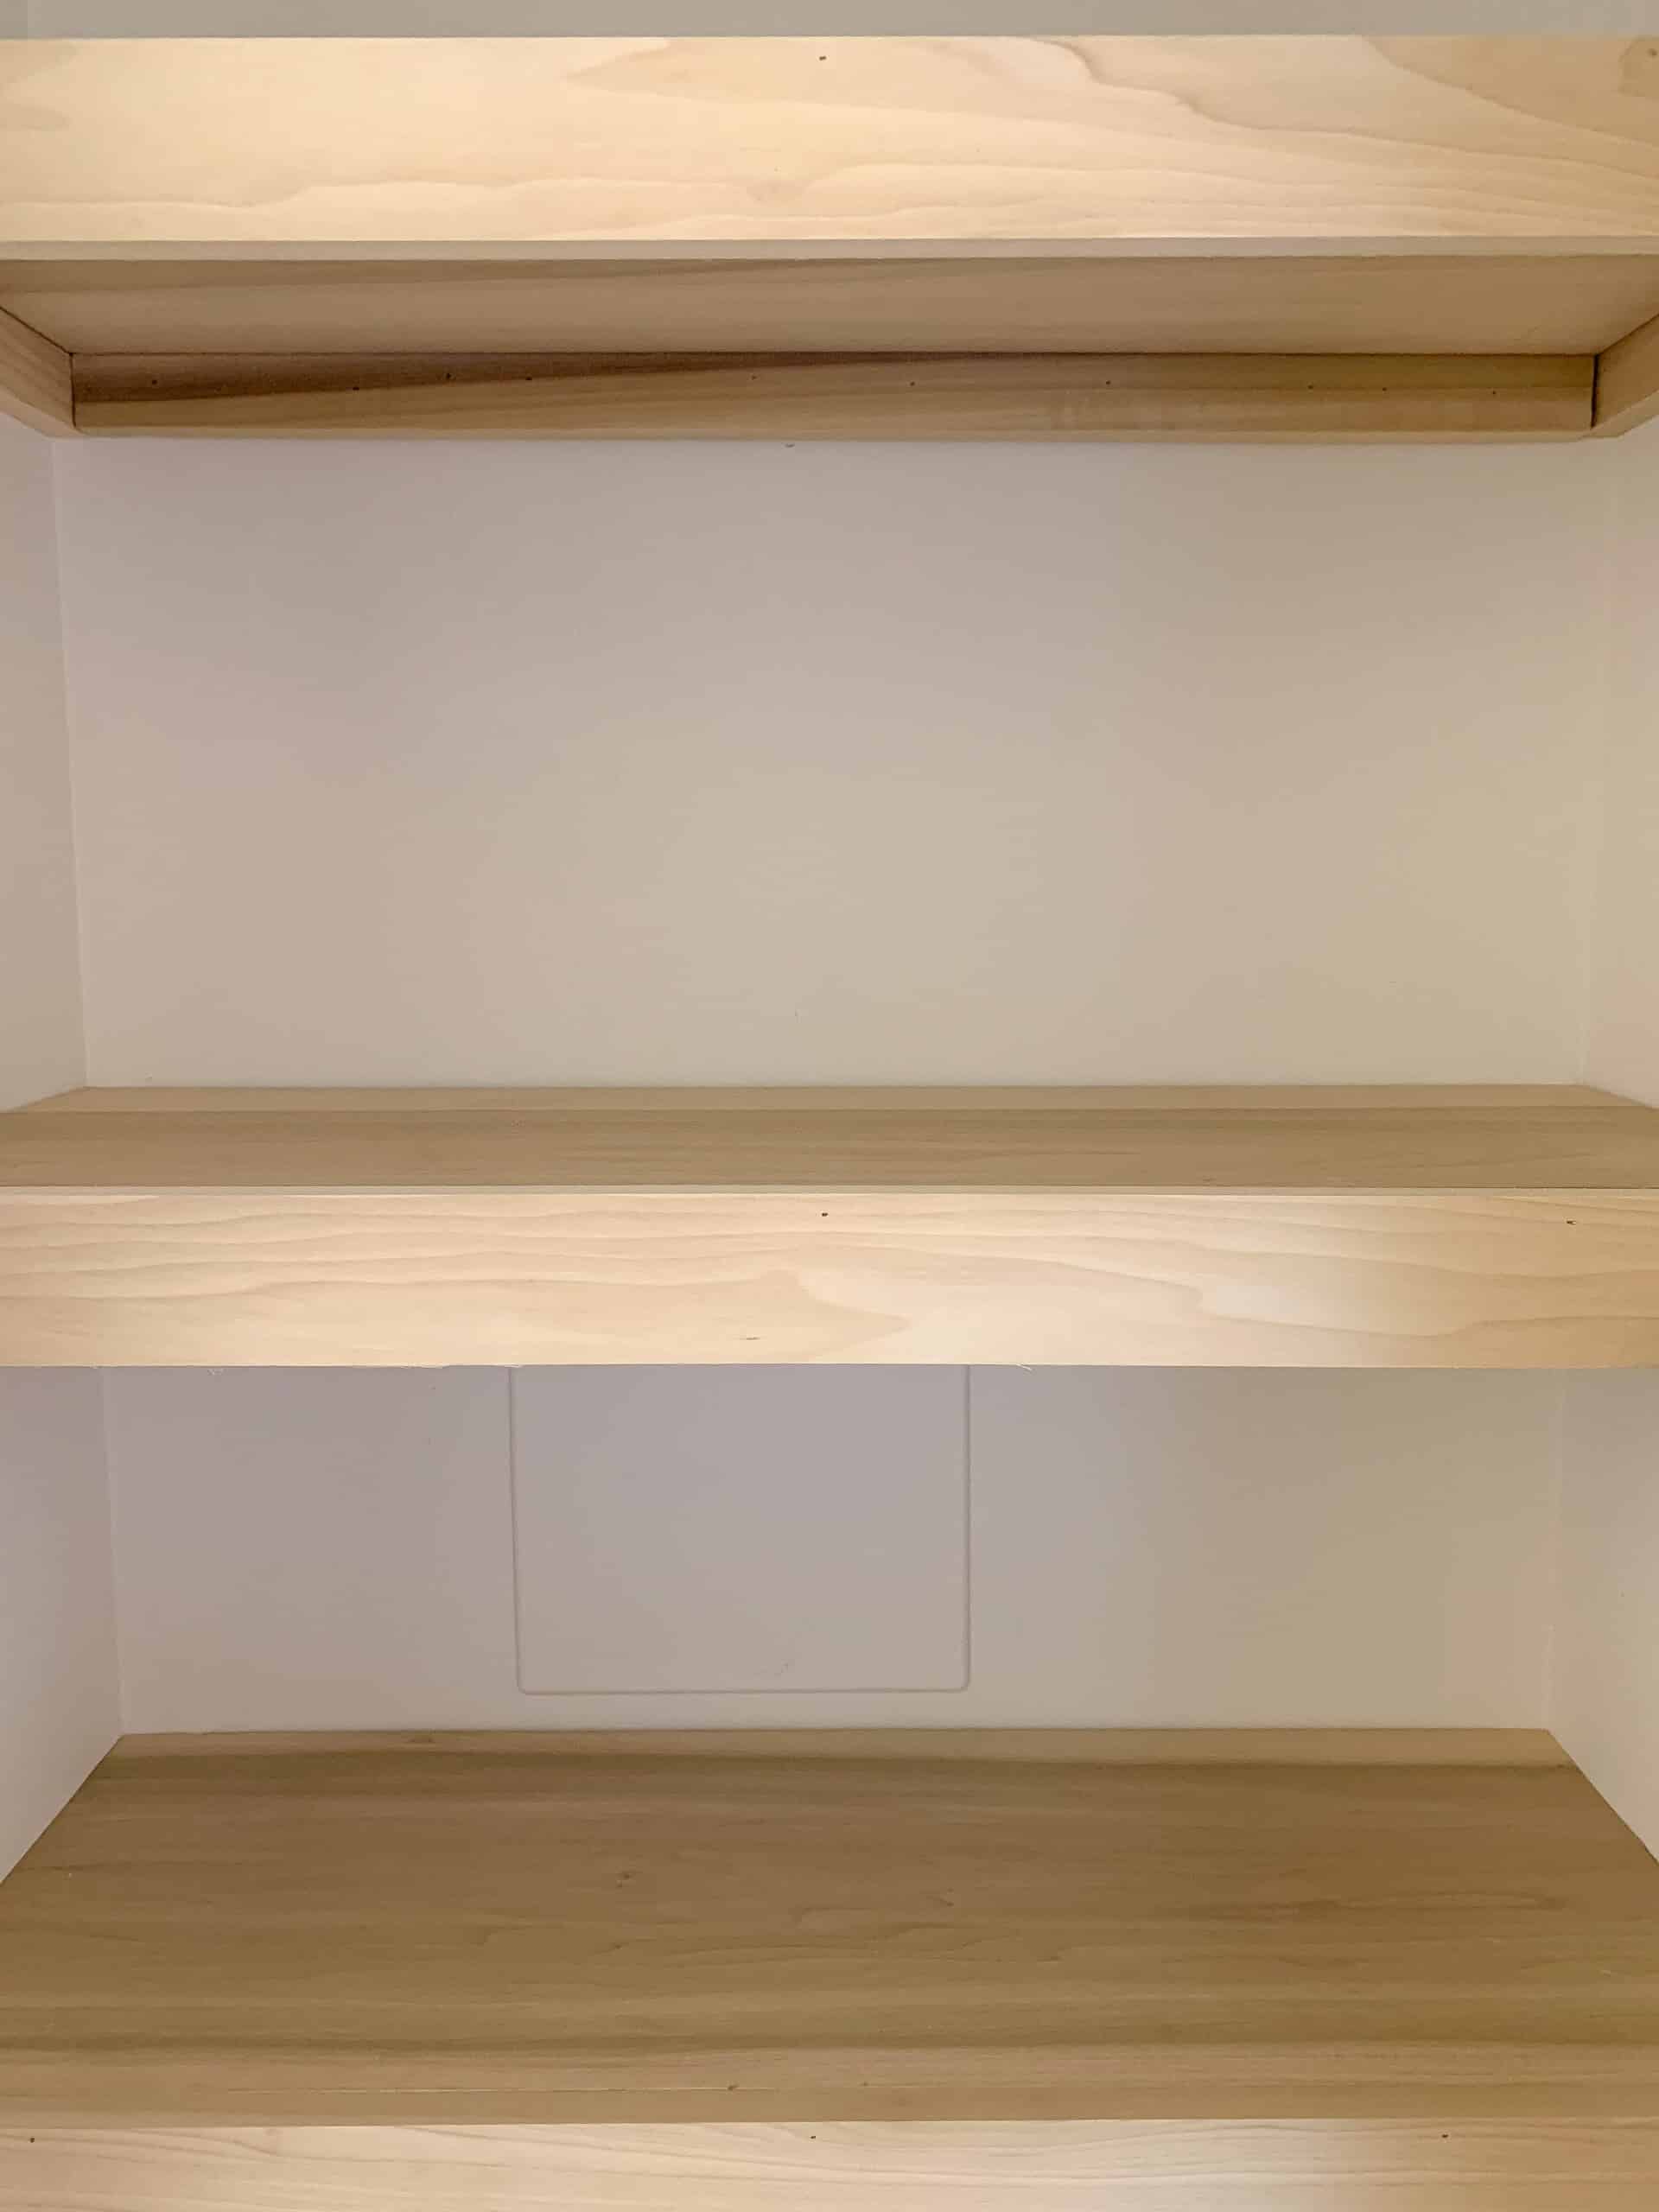 Easy Diy Closet Shelves Tutorial, How To Install Wood Closet Shelves